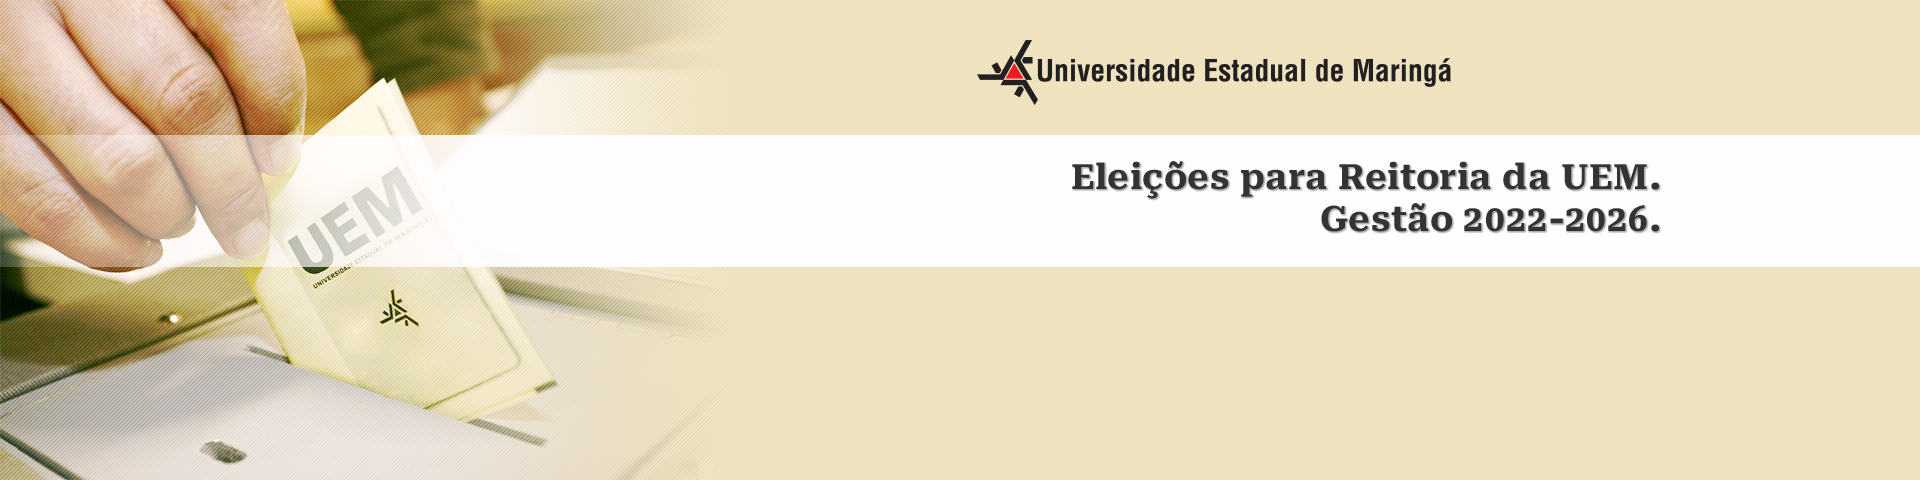 www.uem.br/eleicoes